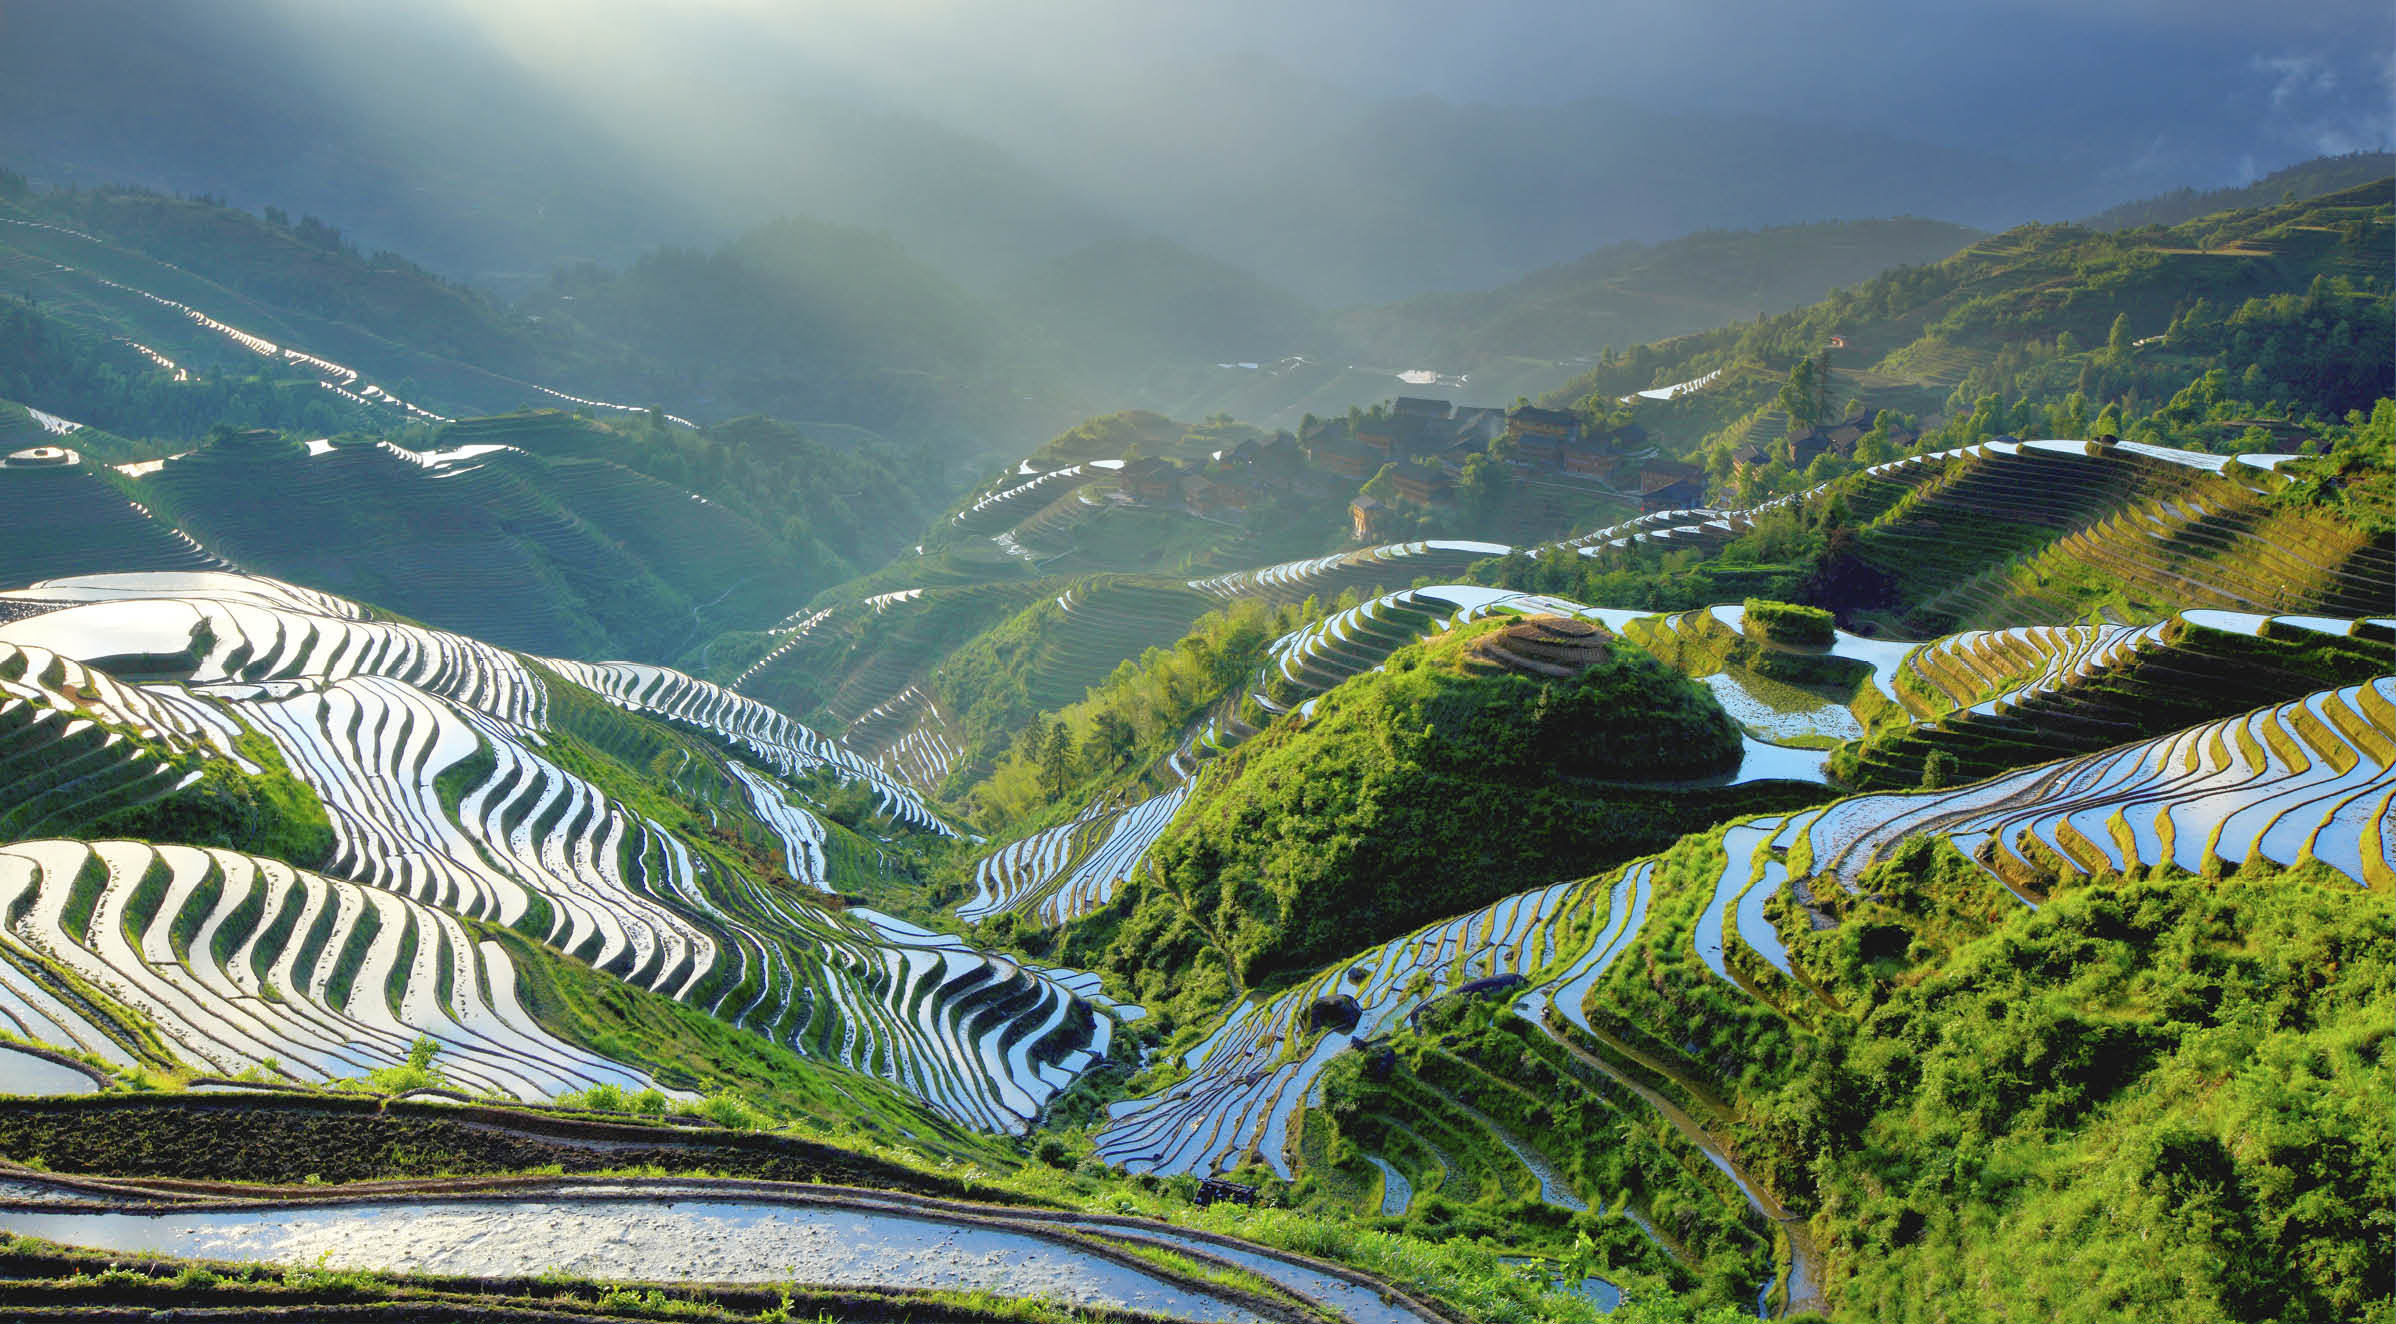 “Rice paddy in Longsheng,Guilin,Guangxi,China."